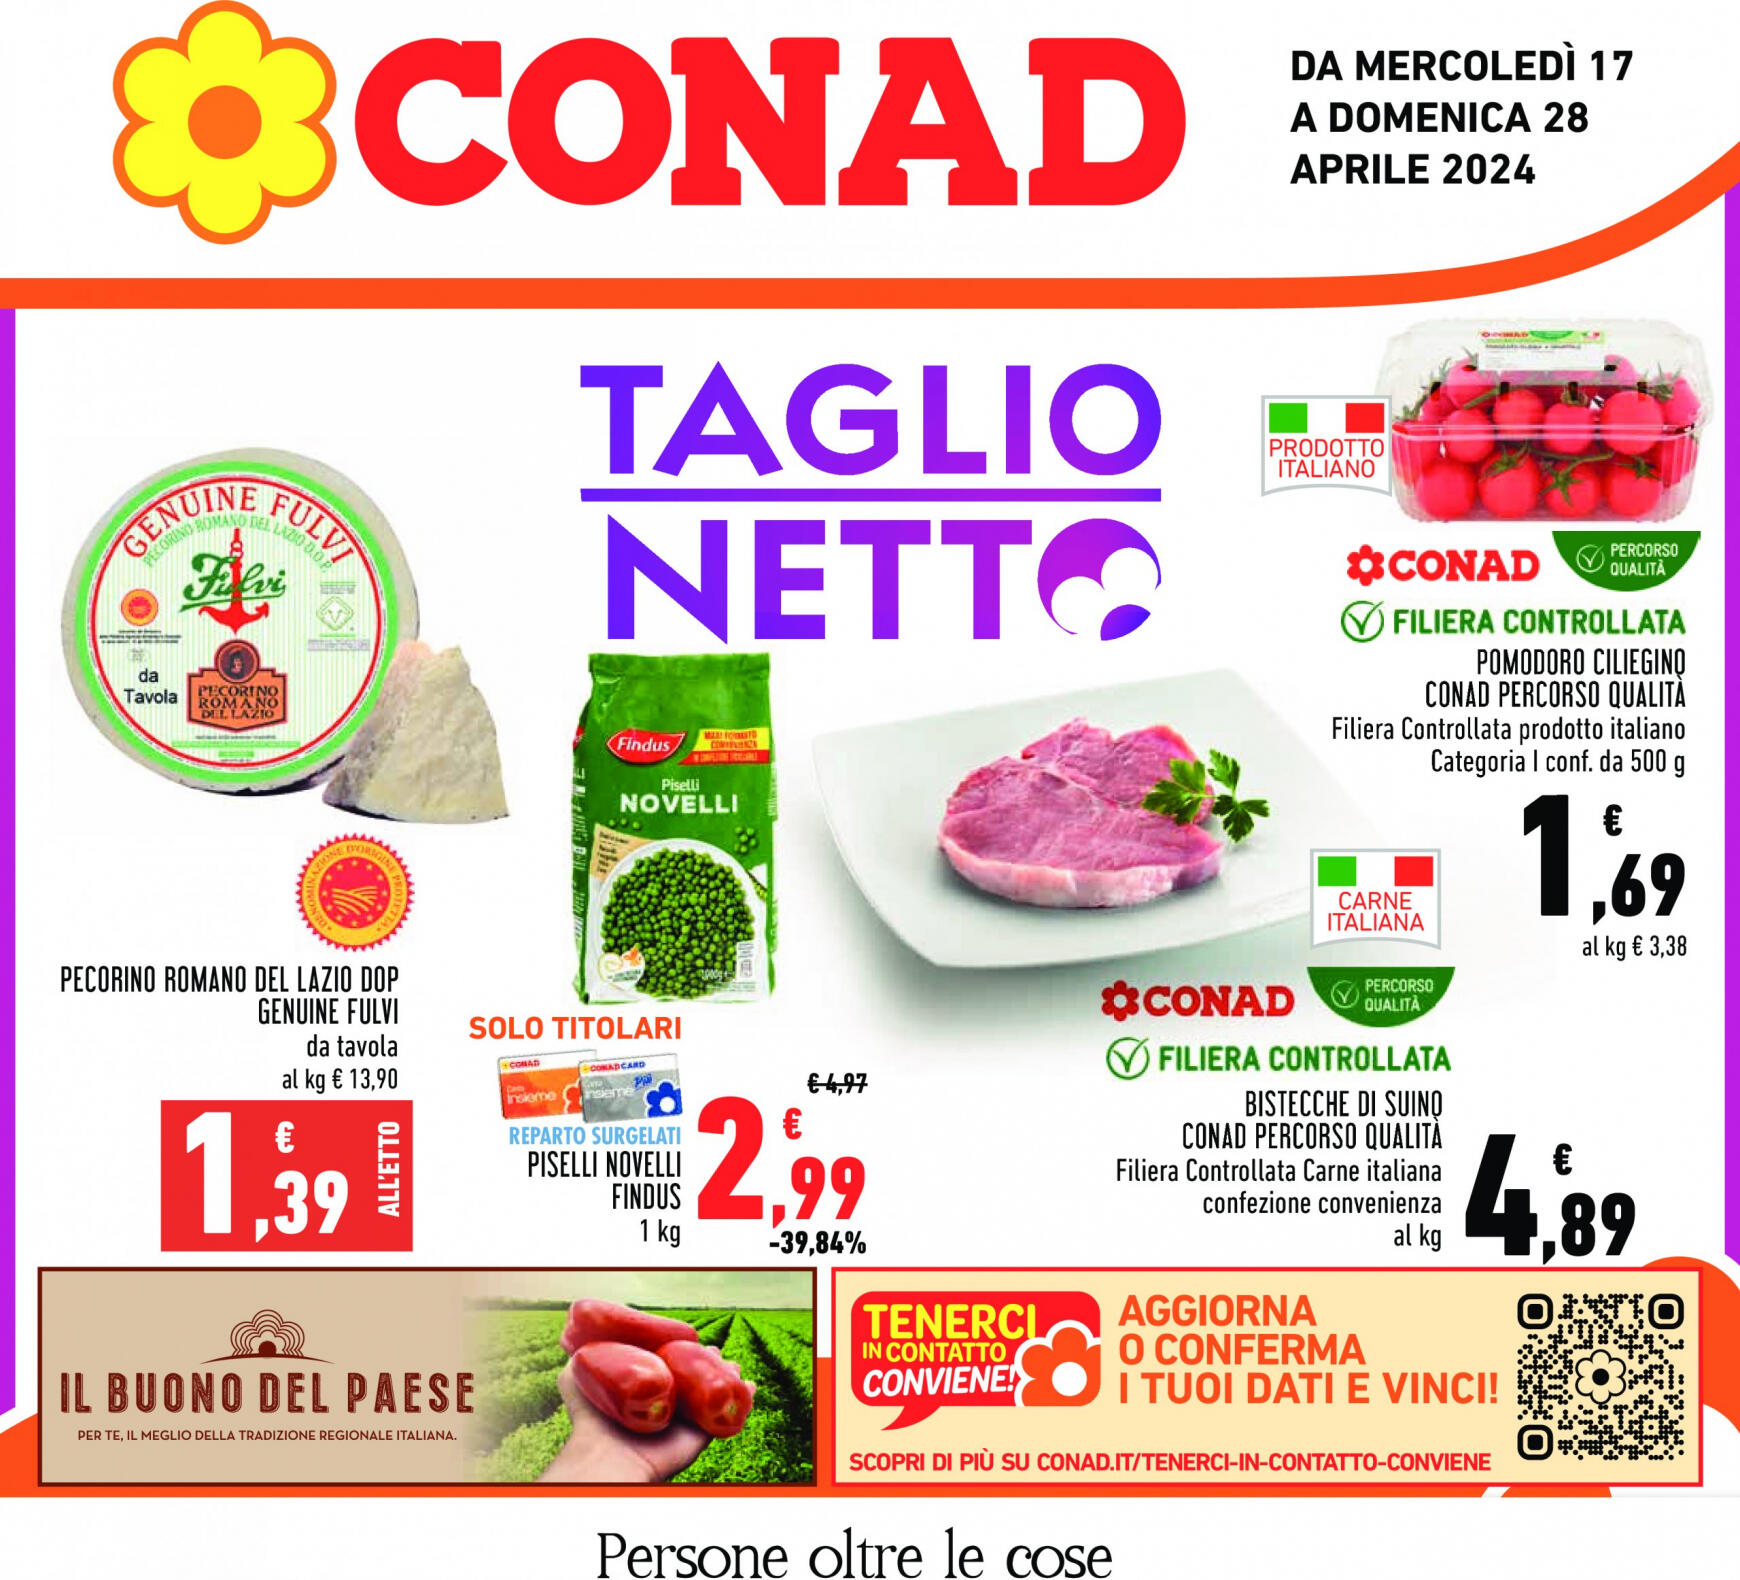 conad - Nuovo volantino Conad 17.04. - 28.04.